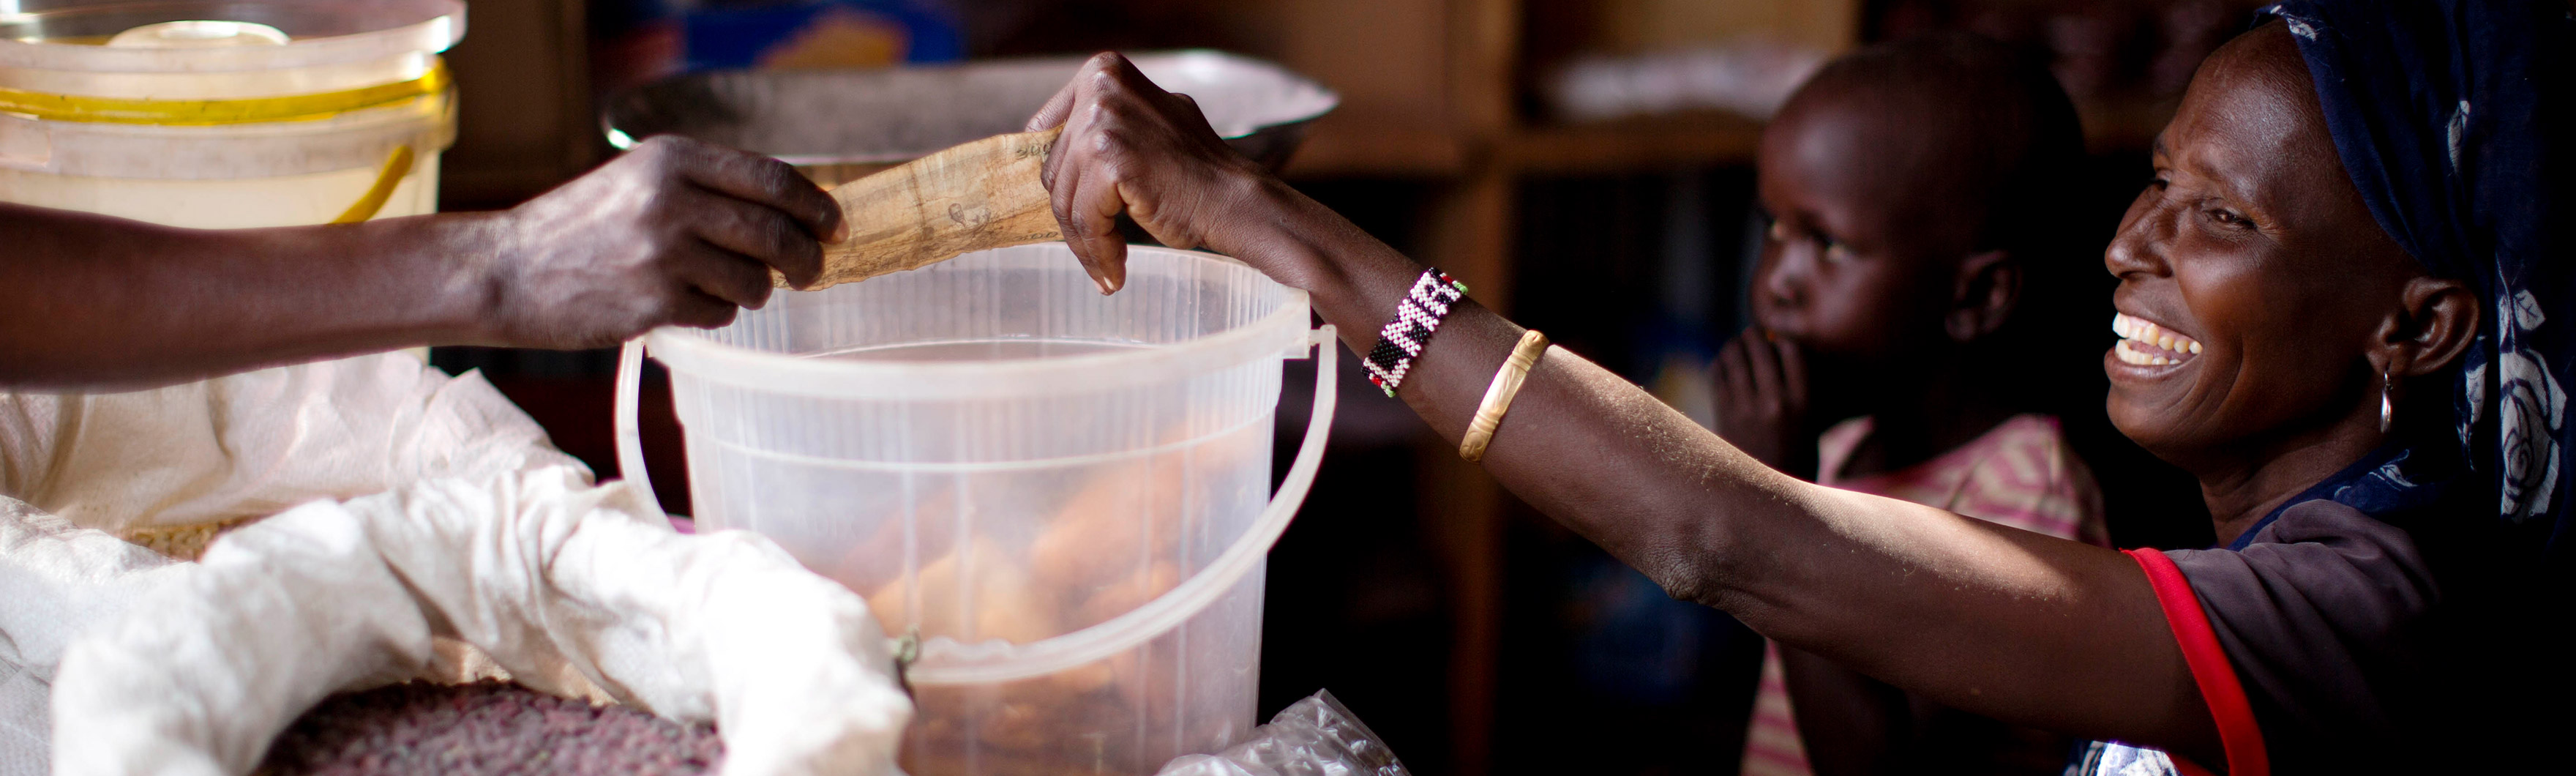 Kenya, Christine atteinte de la poliomyélite, tient une petite épicerie construite pour elle dans le cadre du projet d’insertion professionnelle mené par HI dans le camp de réfugiés de Kakuma.